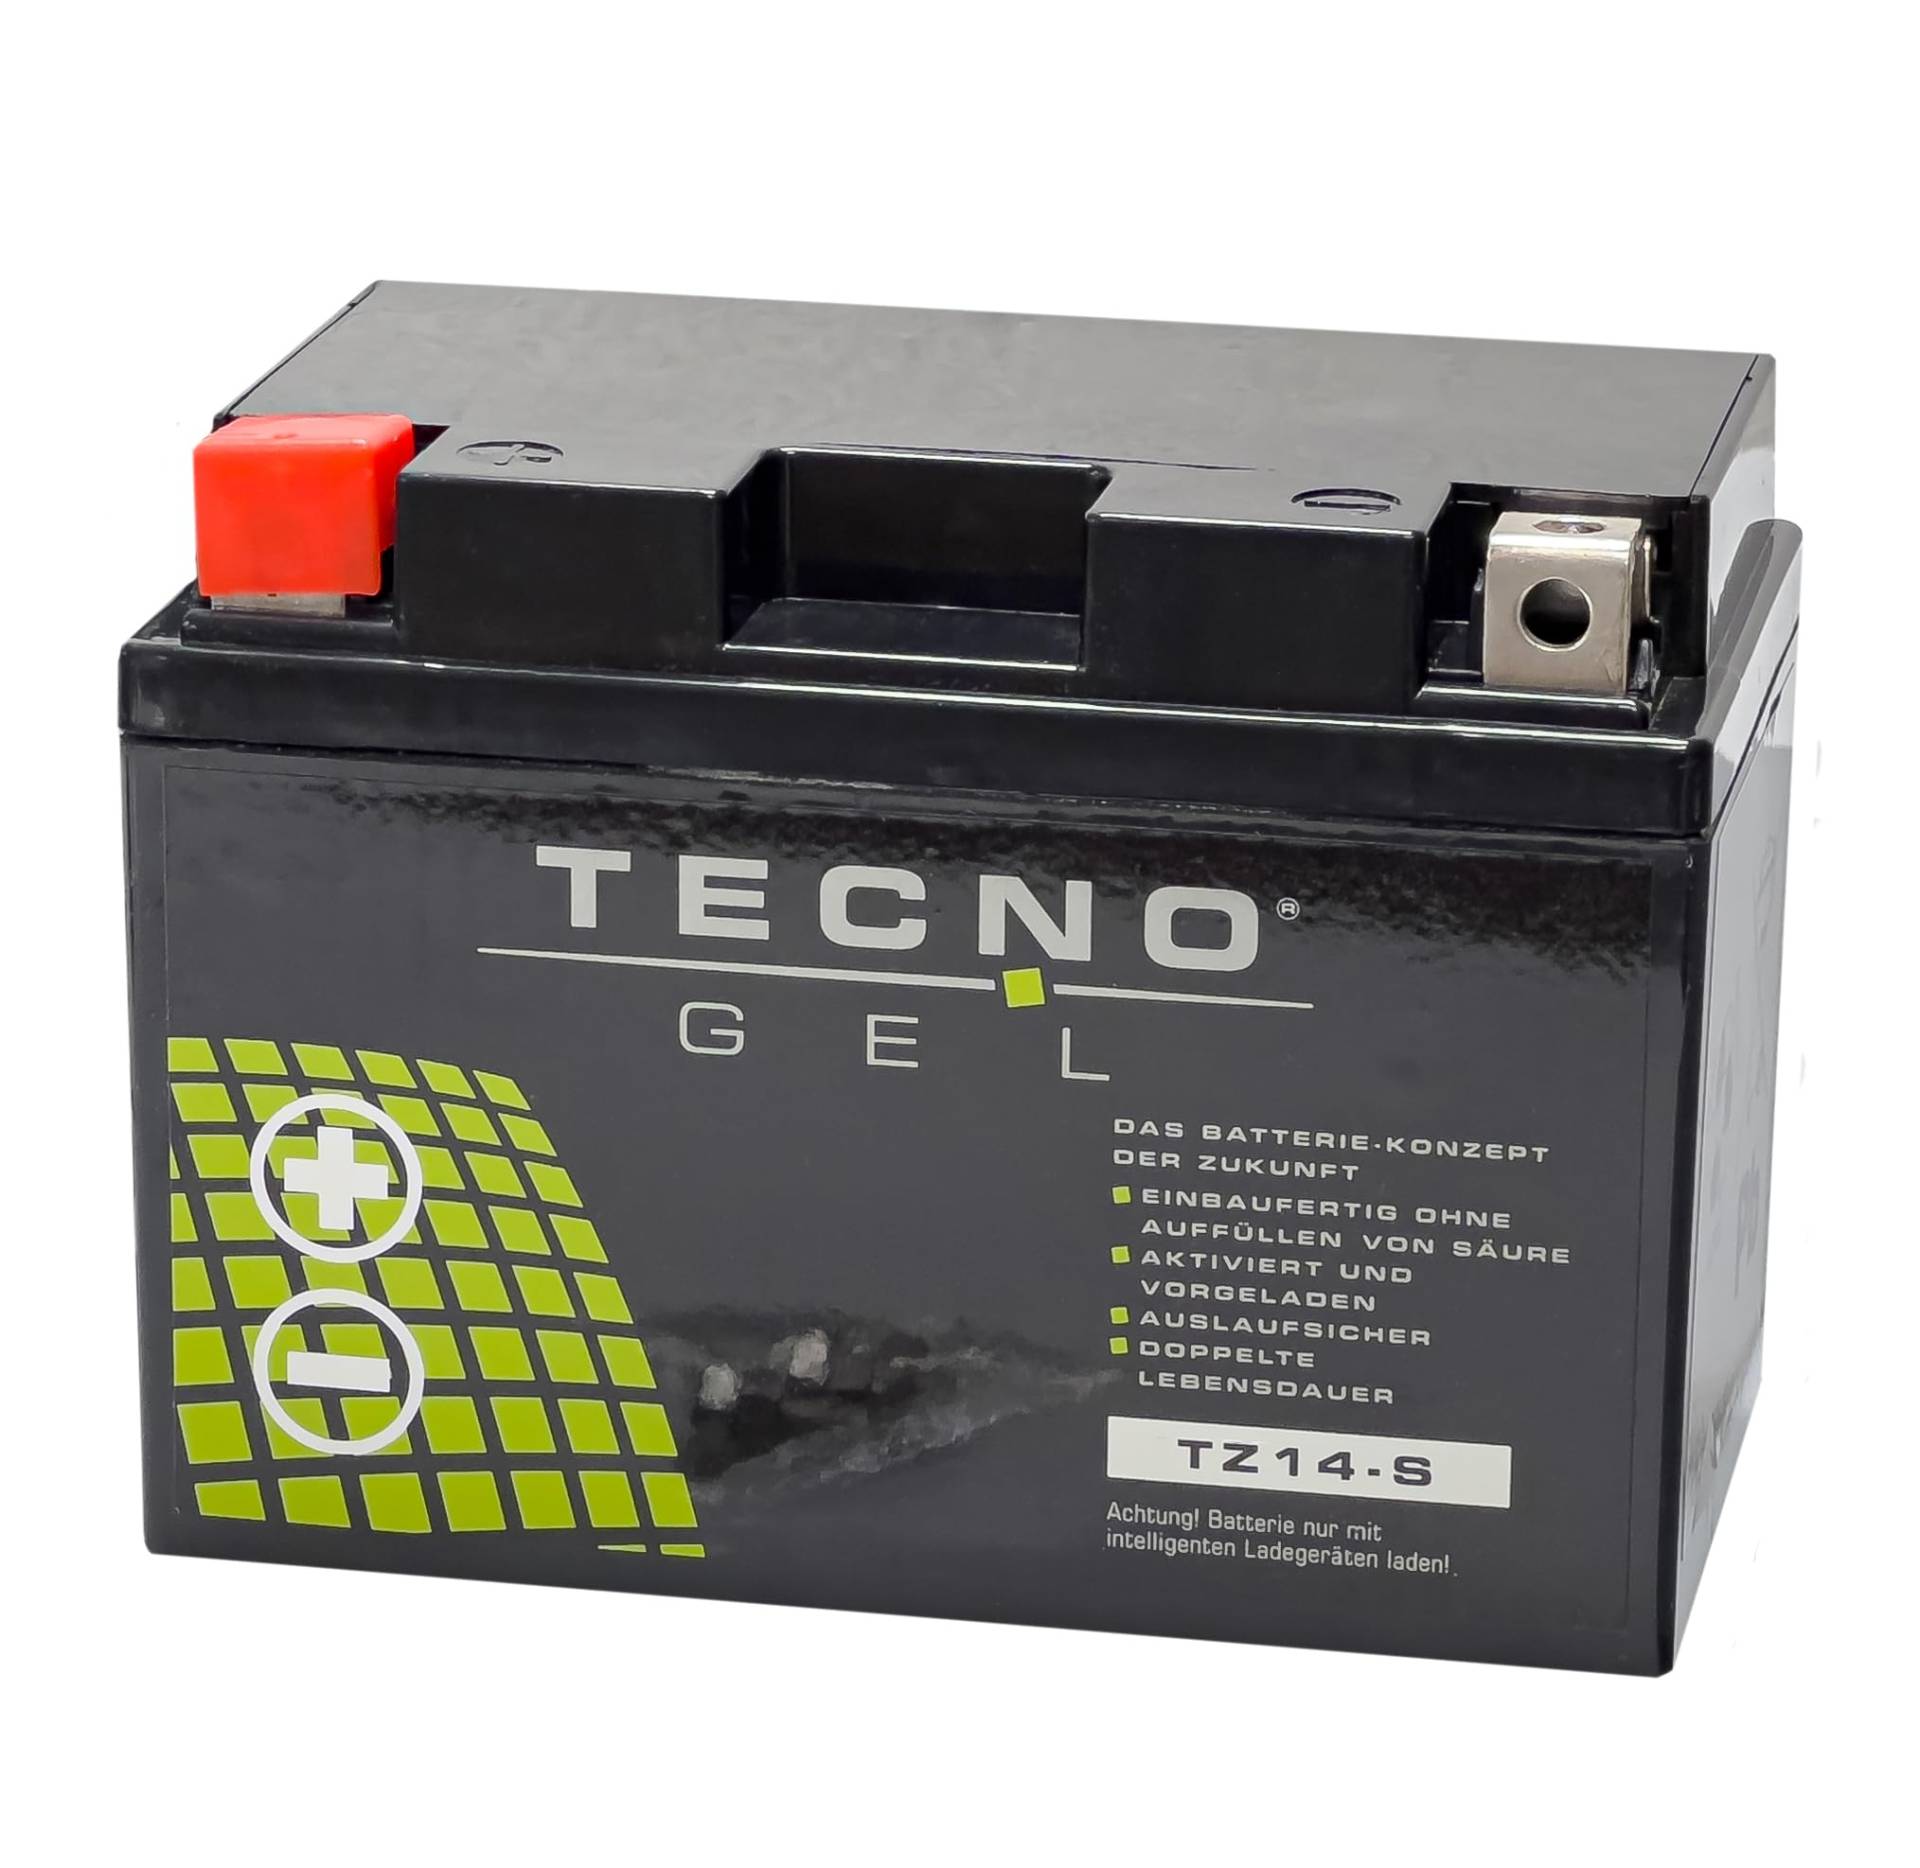 TECNO-GEL Motorrad-Batterie für YTZ14-S für BENELLI TNT 899/1130 u. Tre-K, Tornado alle 2005-2019, 12V Gel-Batterie 11,3Ah (DIN 51101), 151x87x110 mm von Wirth-Federn